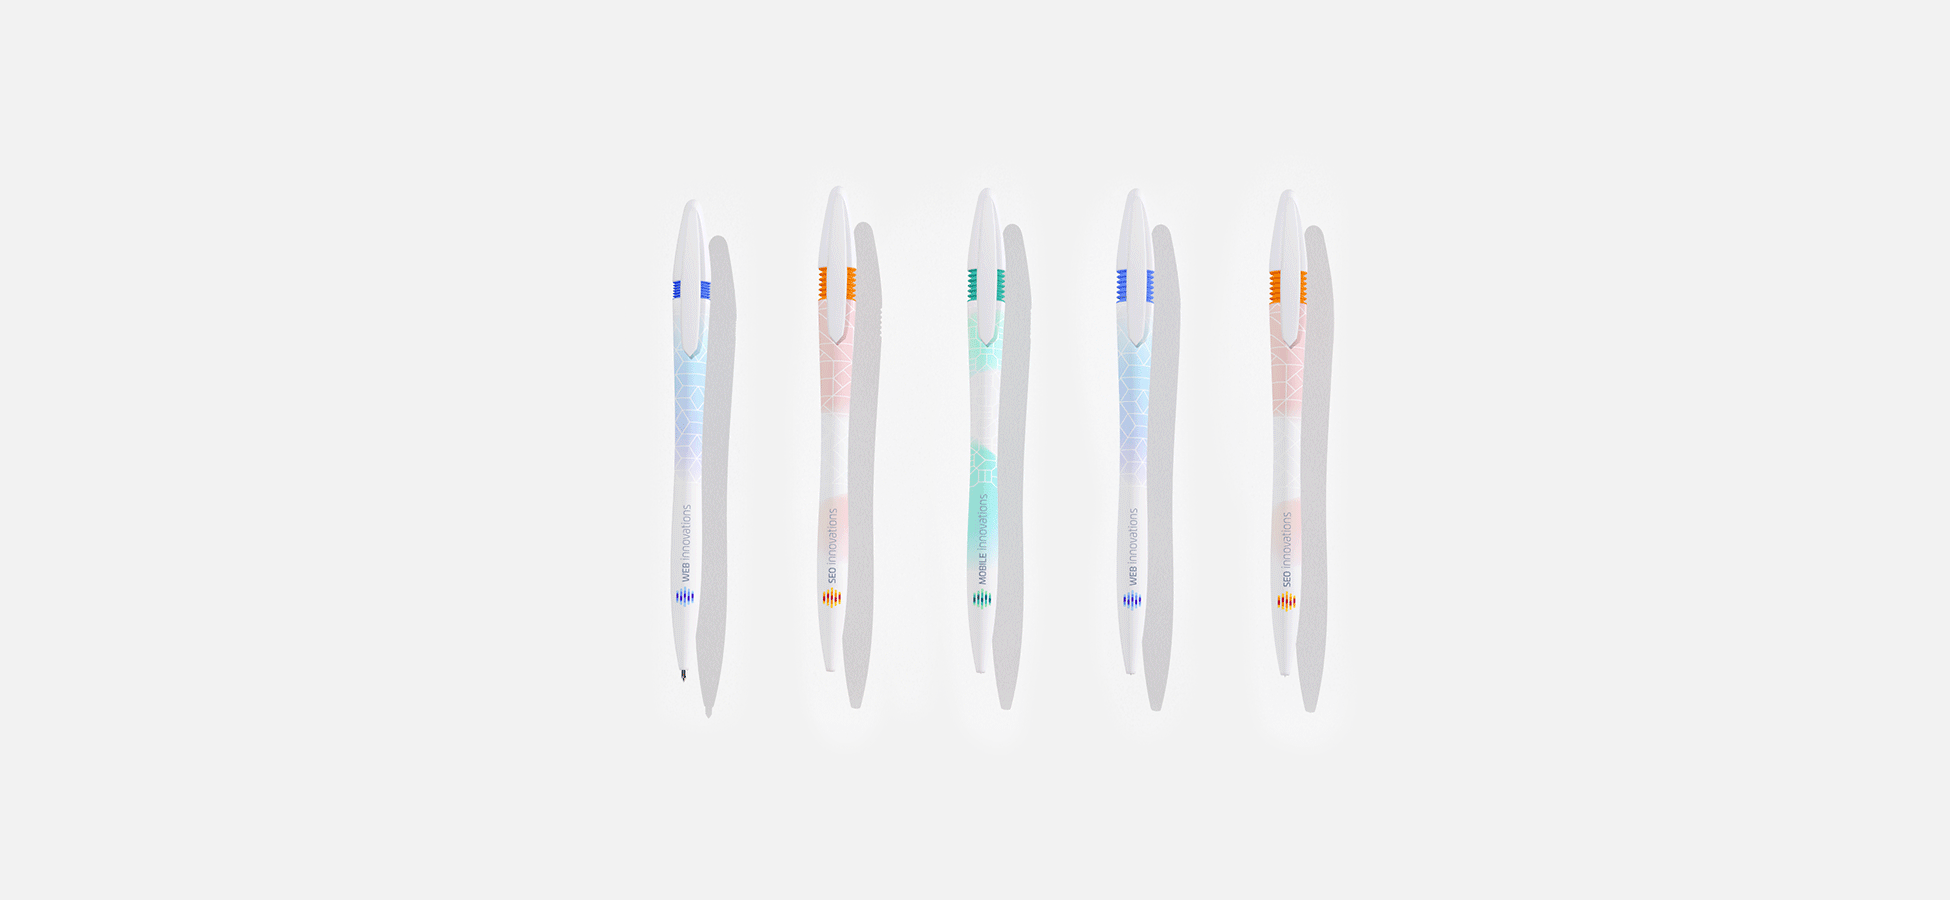 Создание дизайна сувенирной продукции - шариковые ручки